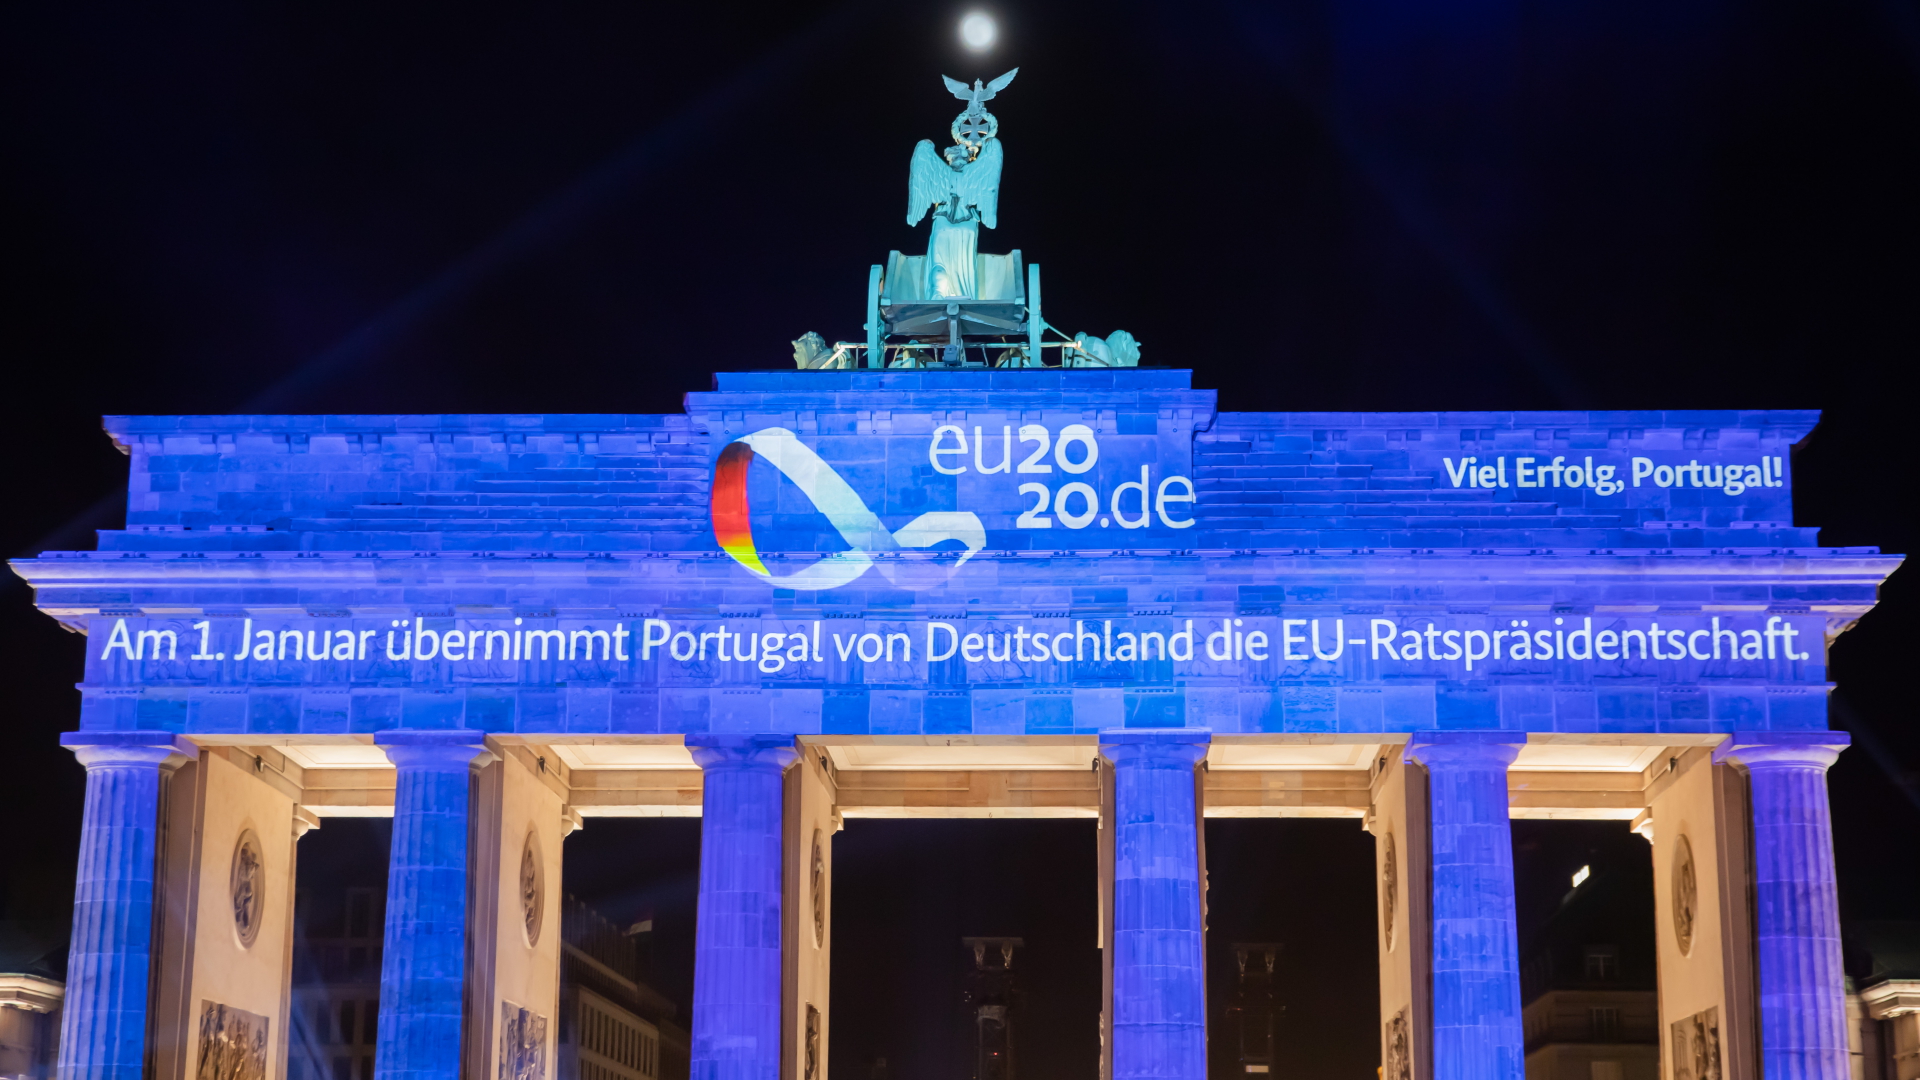 Ankündigung der portugiesischen Ratspräsidentschaft auf dem Brandenburger Tor| Bildquelle: dpa